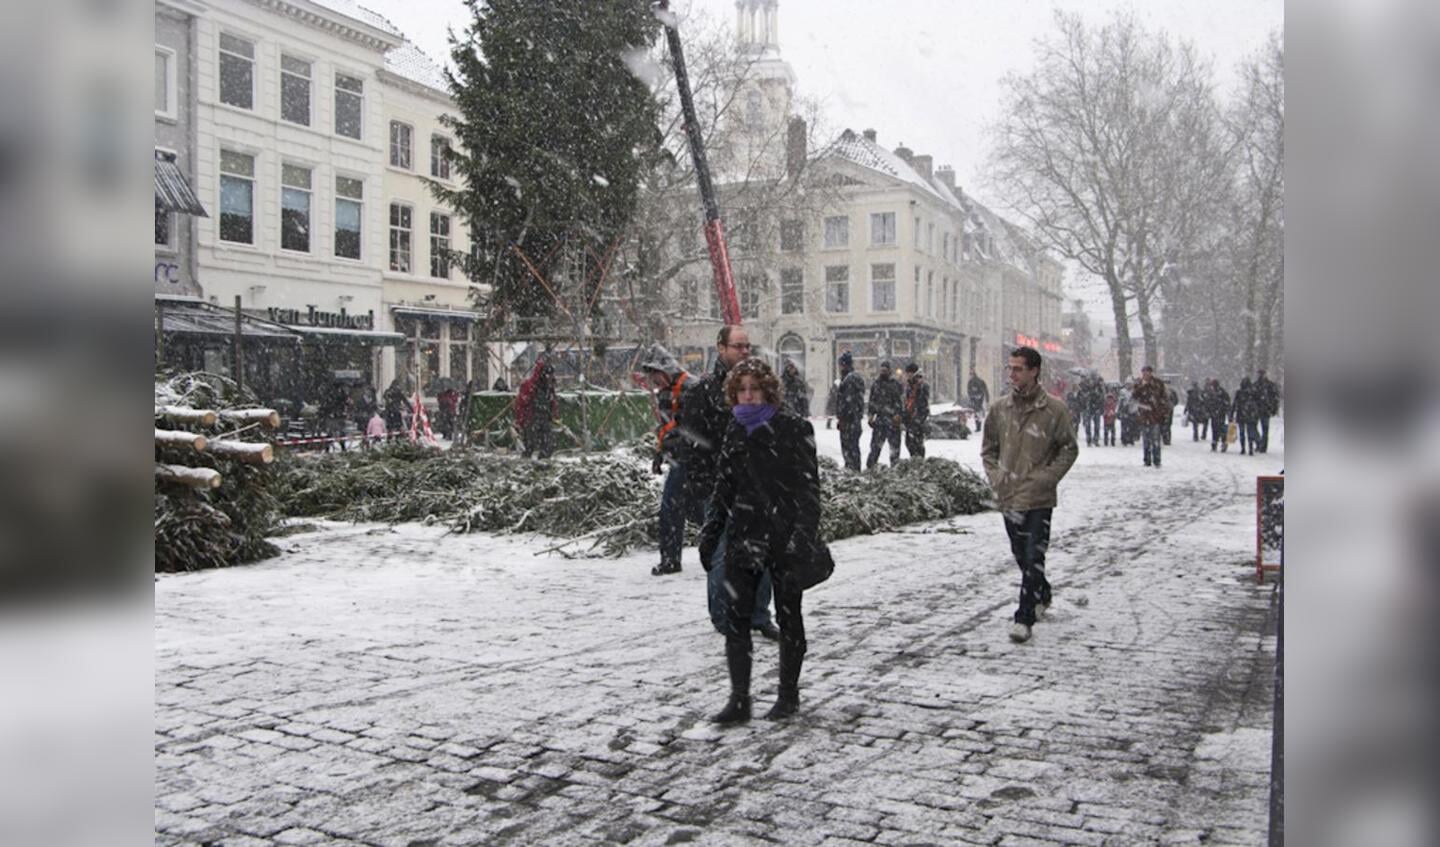 4 december, geheel in winterfsfeer wordt de Kerstboom op de Grote Markt geplaatst. foto Guido van der Kroef